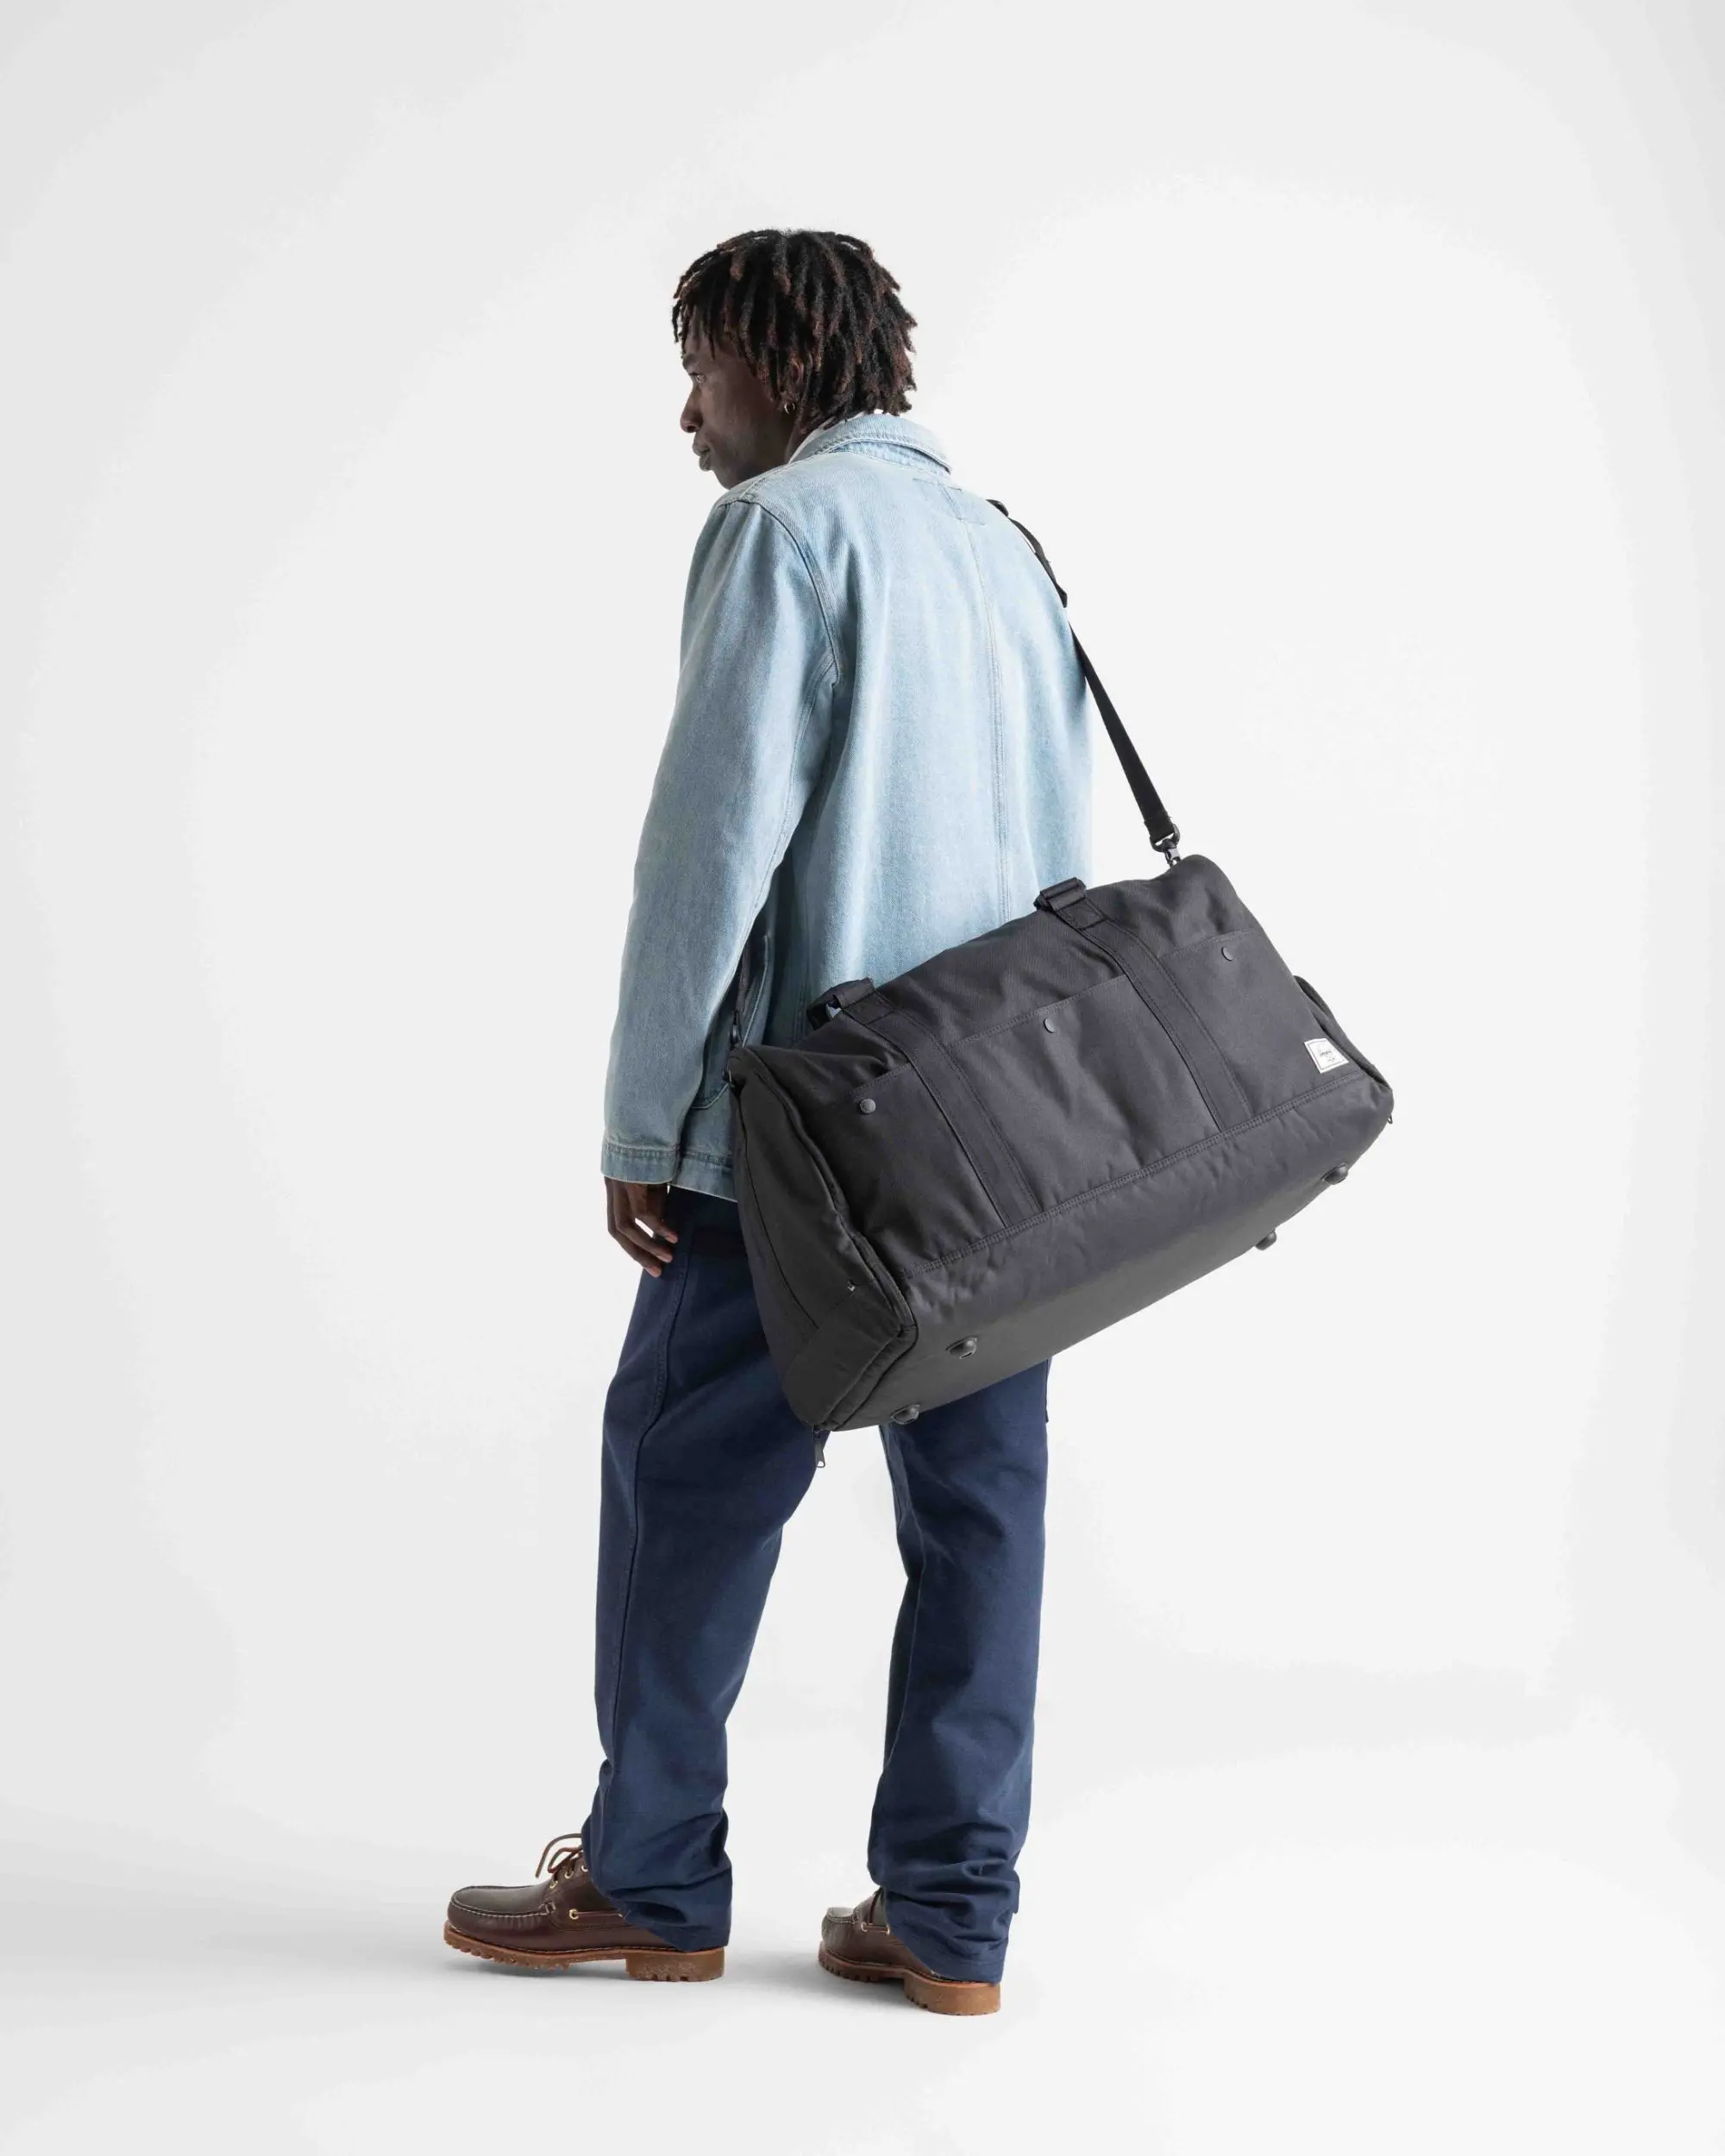 The Bennett Bag – Carry All